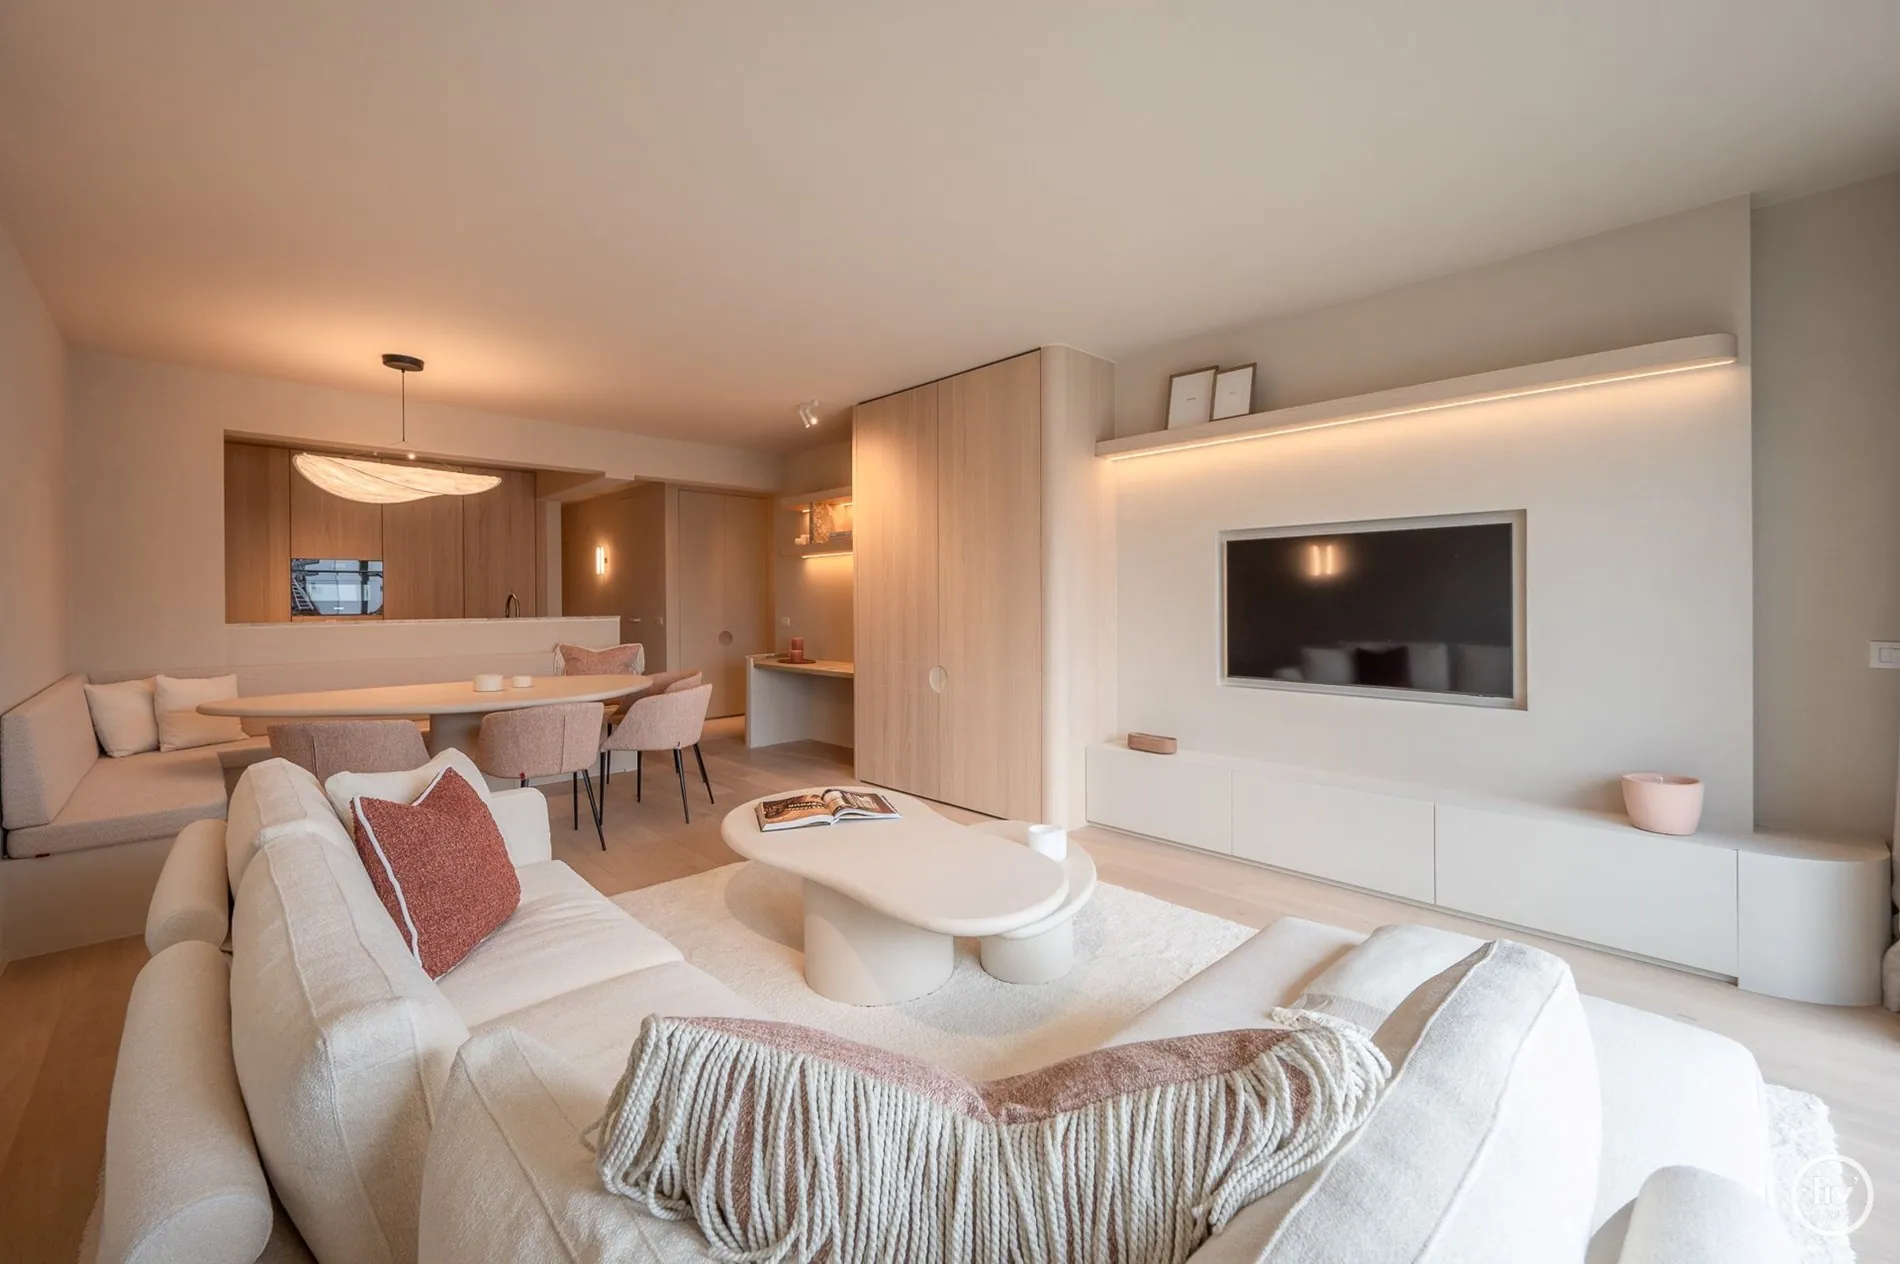 Magnifique appartement rénové de 3 chambres situé dans l'avenue Jozef Nellens, près de la digue à Knokke.